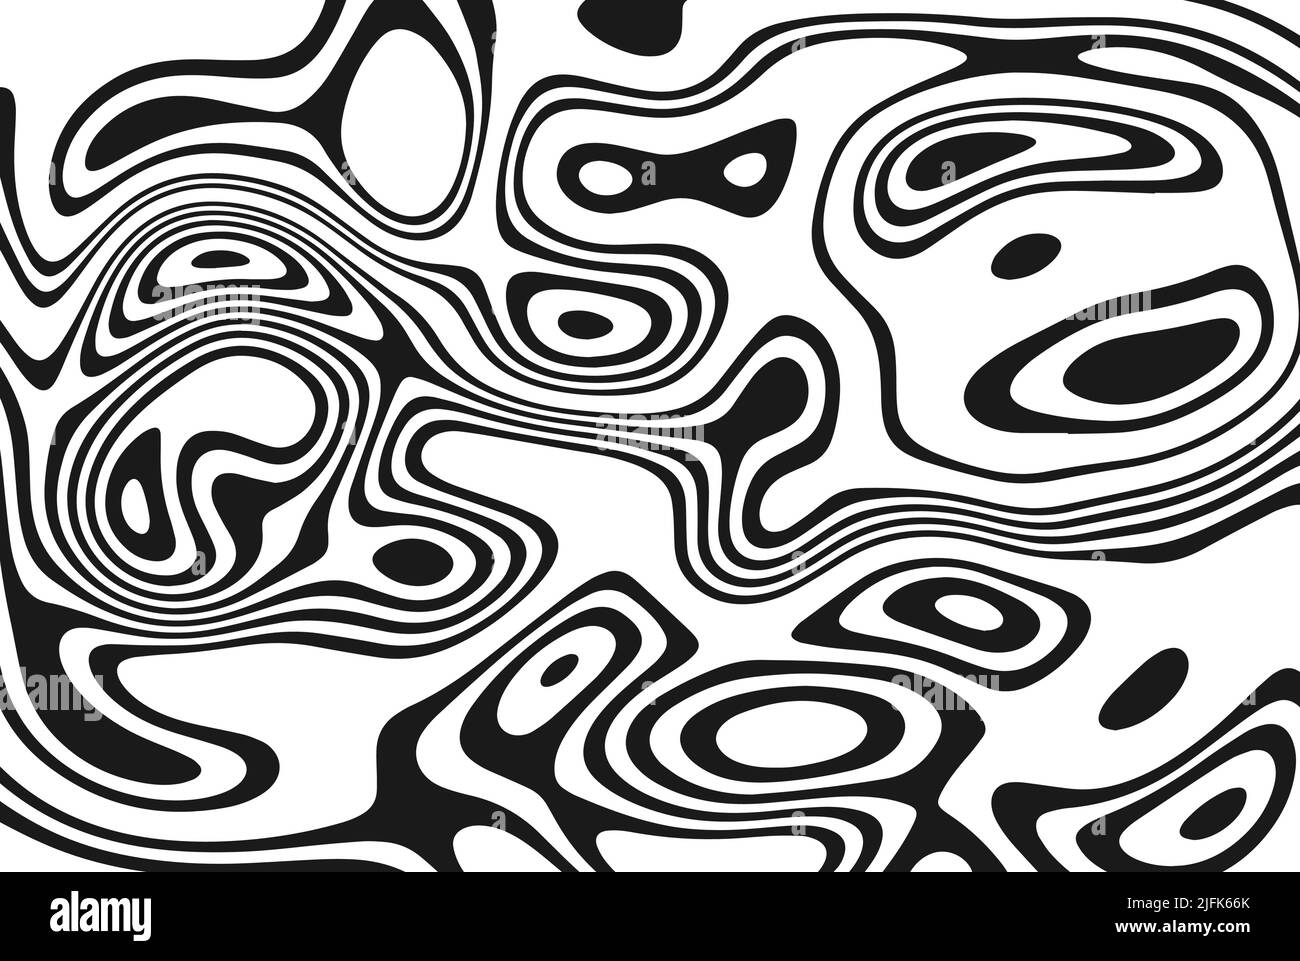 Schwarz-Weiß-Design. Muster mit optischer Illusion. Abstrakter geometrischer Hintergrund. Vektorgrafik. Stock Vektor